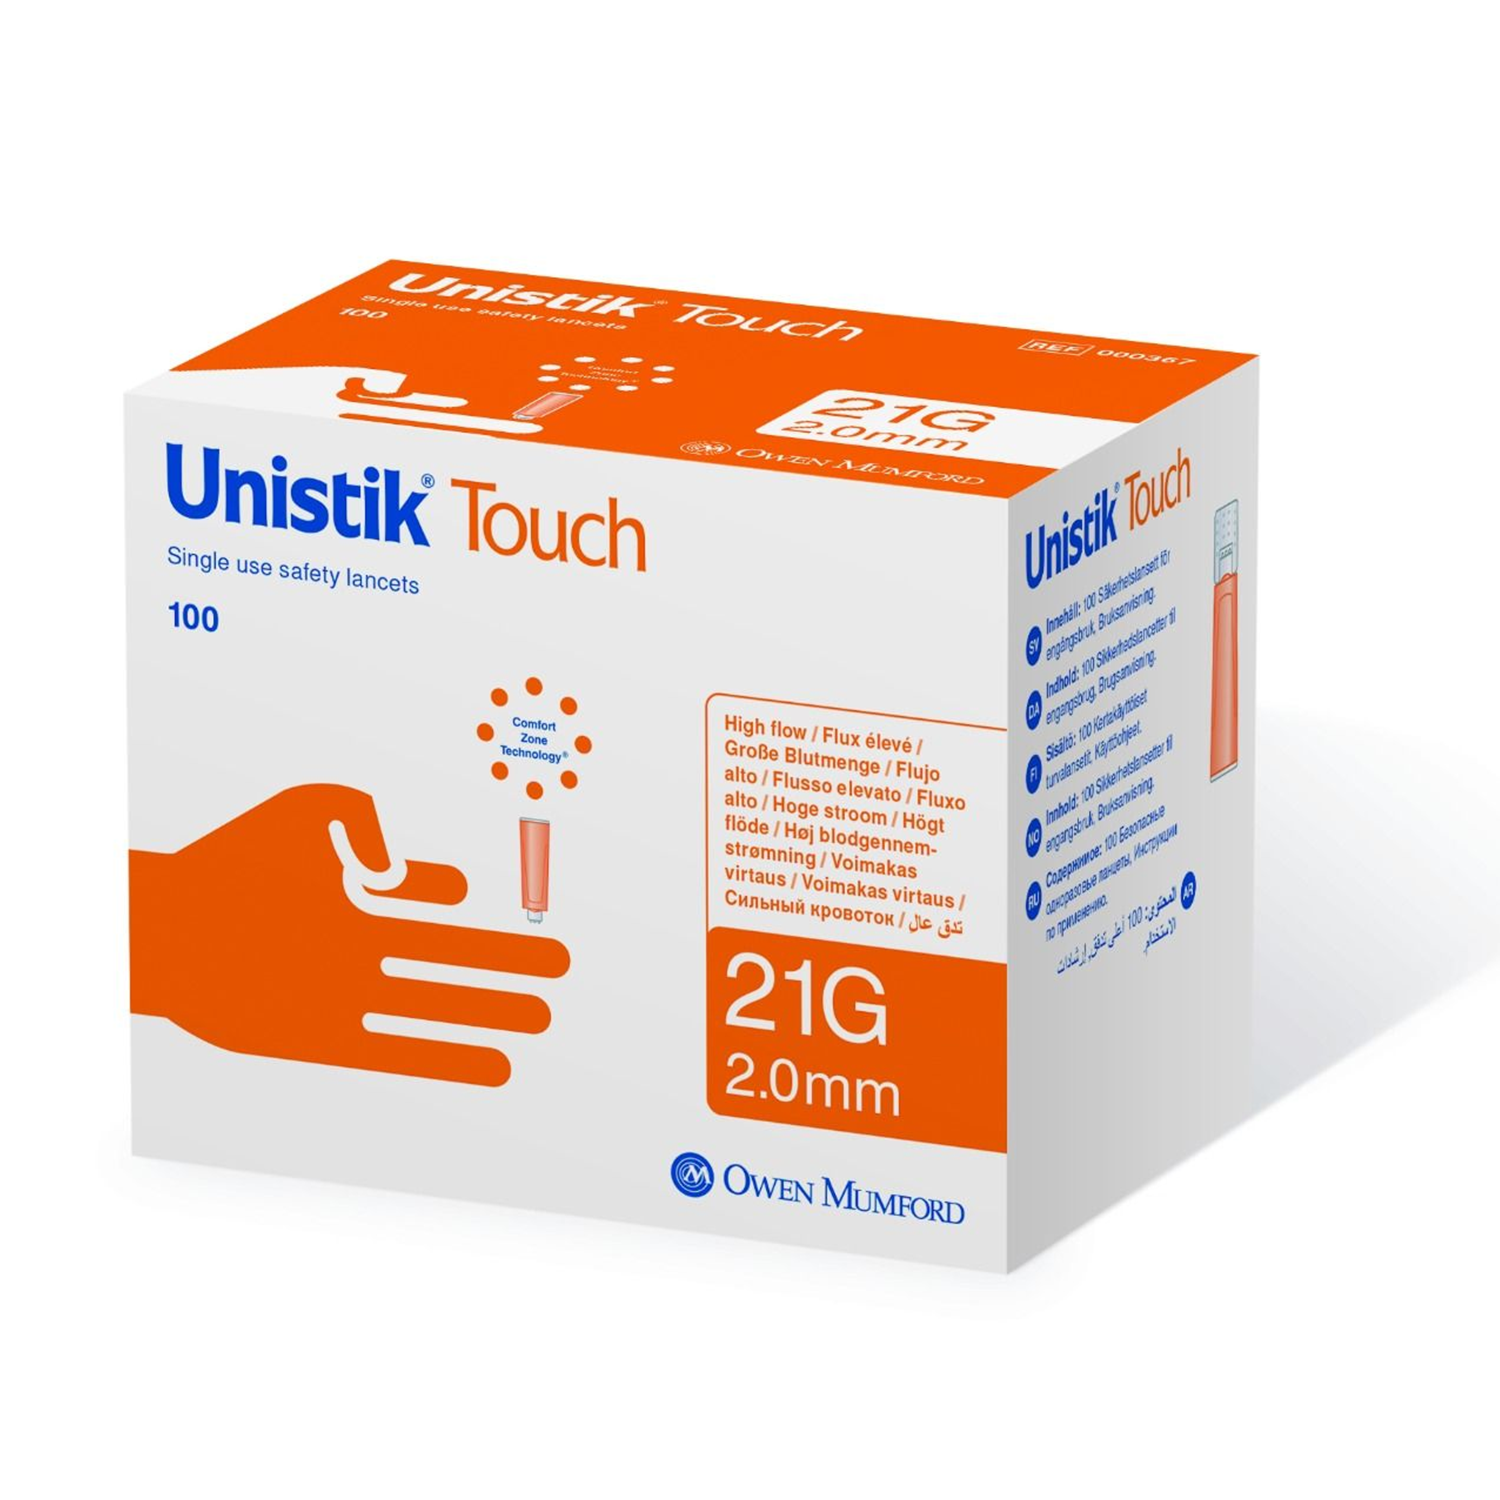 Unistik Touch Lancets | Orange | 21G | 2mm | Pack of 100